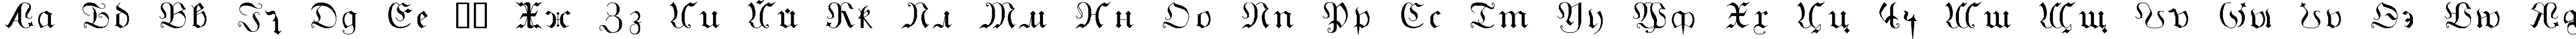 Пример написания русского алфавита шрифтом GothicG